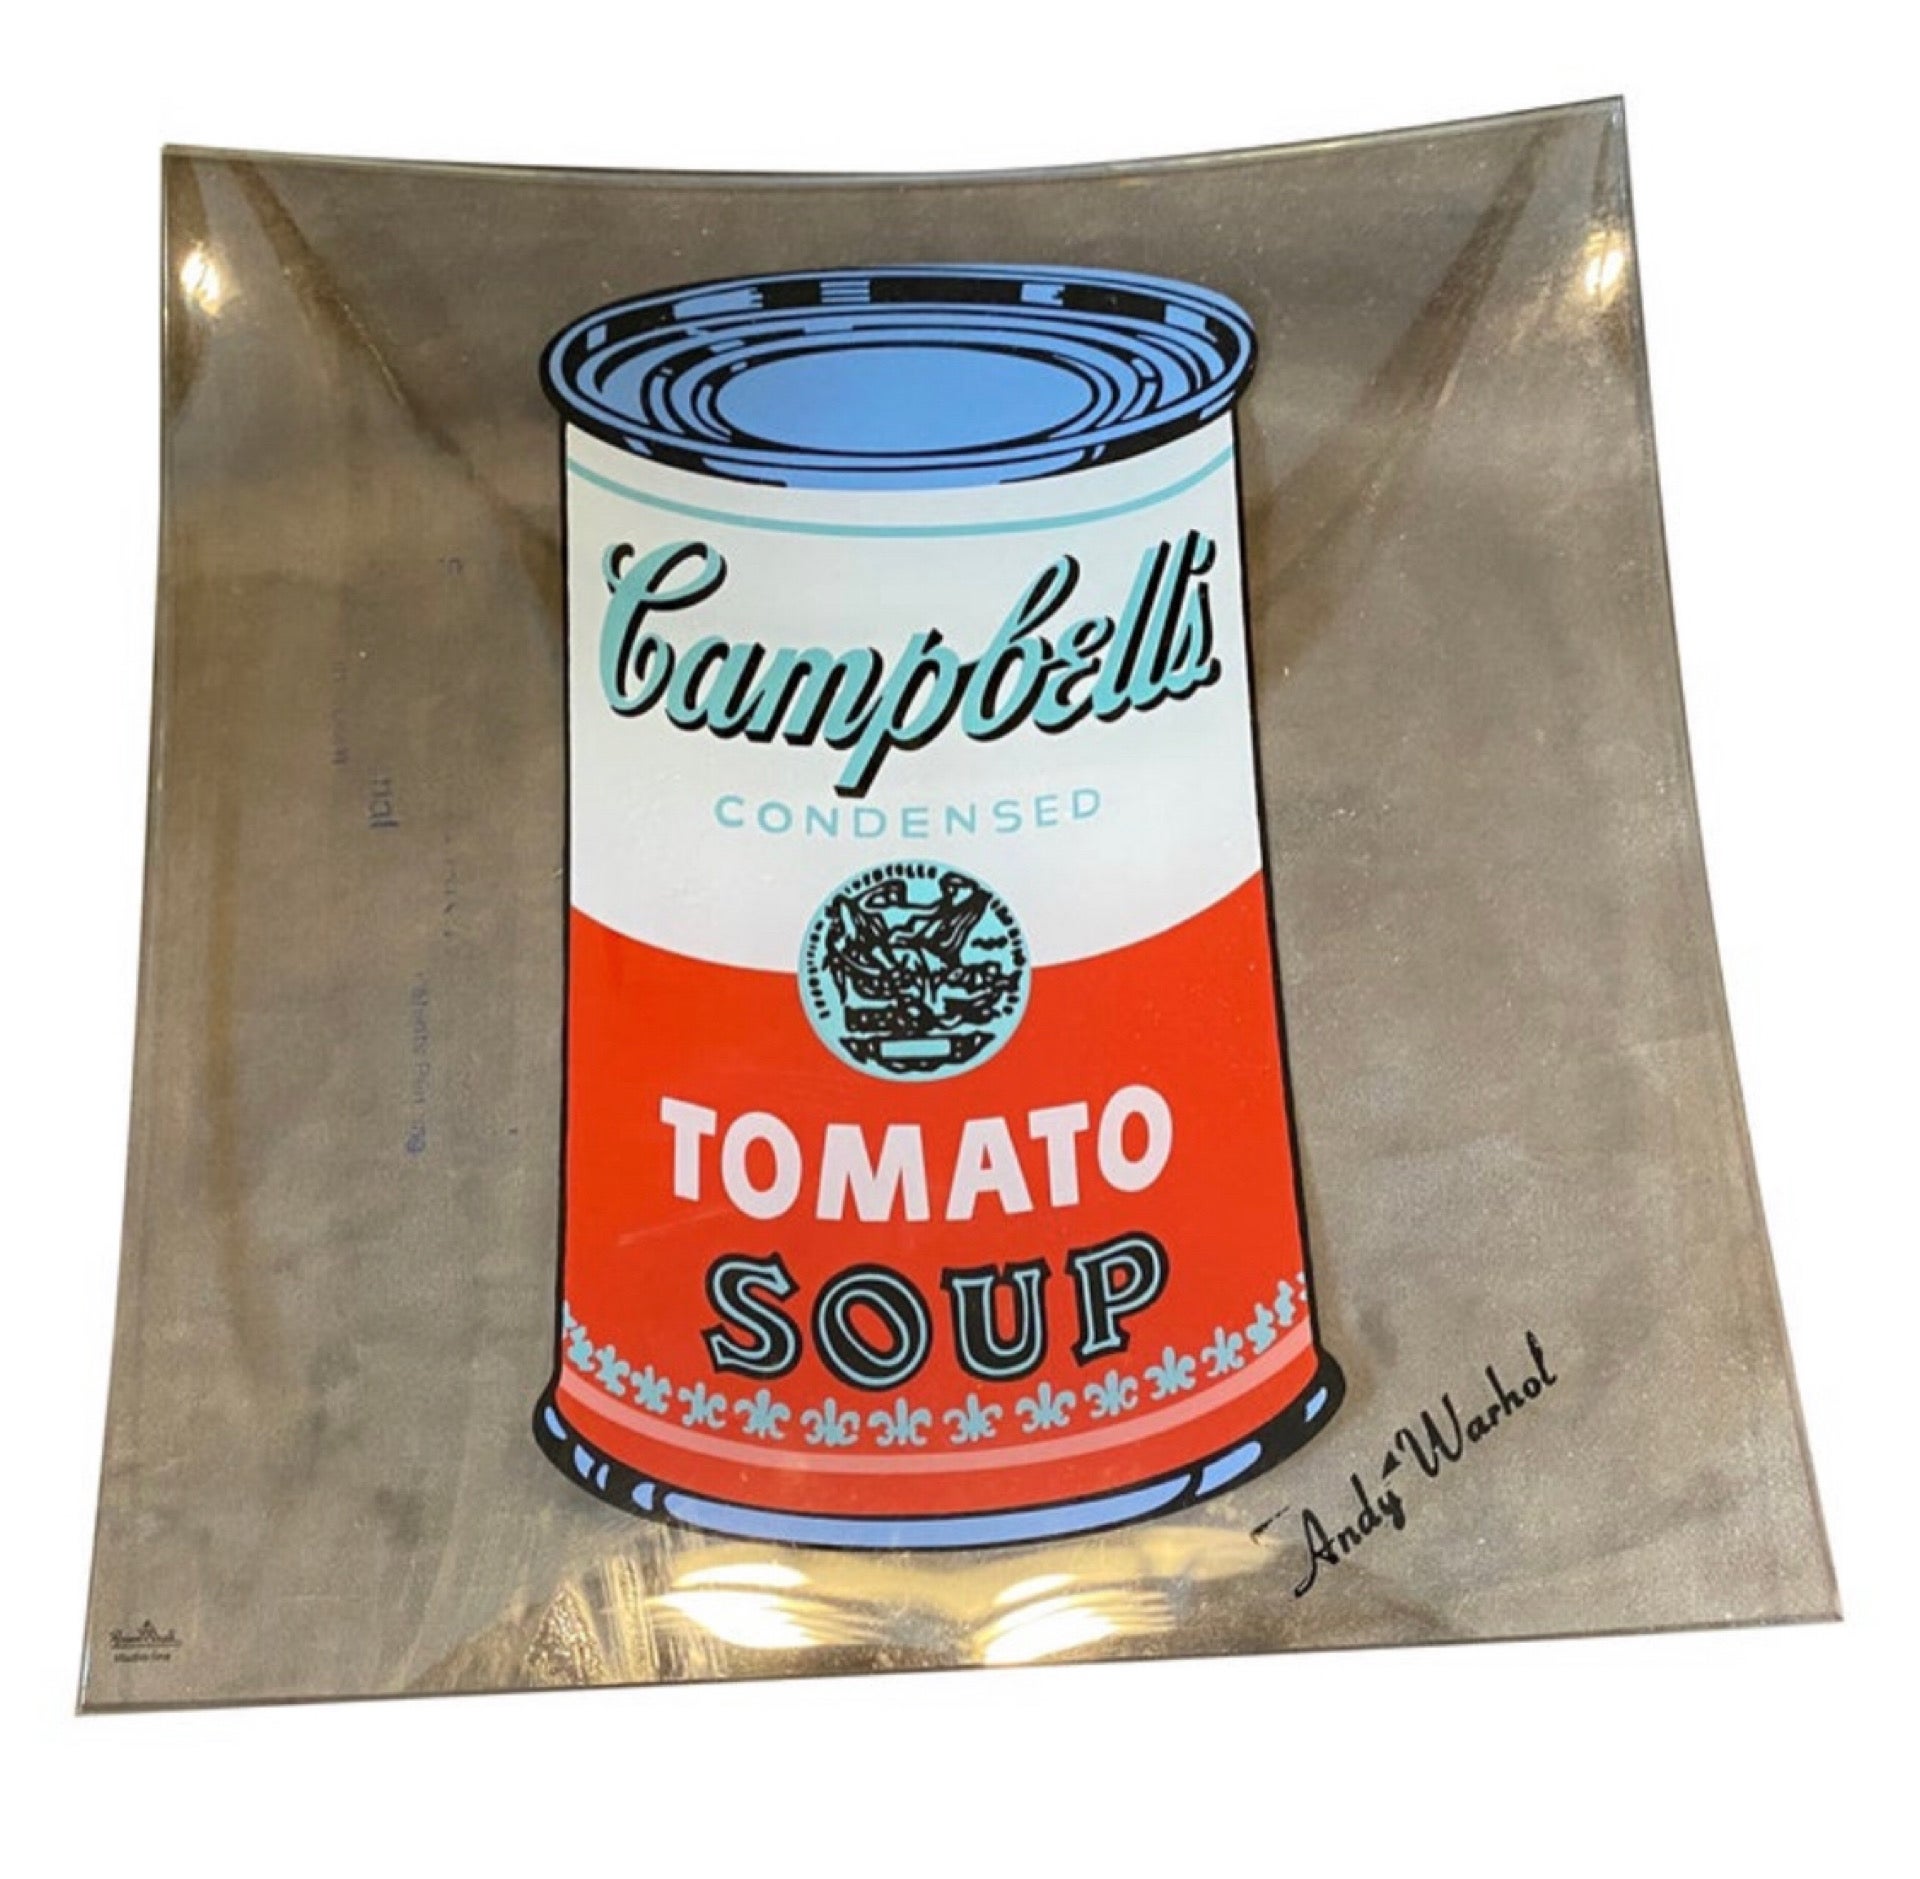 Le petit plateau en verre Rosenthal campbell soup, conçu par Andy Warhol, est une œuvre d'art pop qui capture l'imagerie emblématique de la boîte de soupe Campbell d'une manière fonctionnelle et élégante. Le plateau est fabriqué  en verre de haute